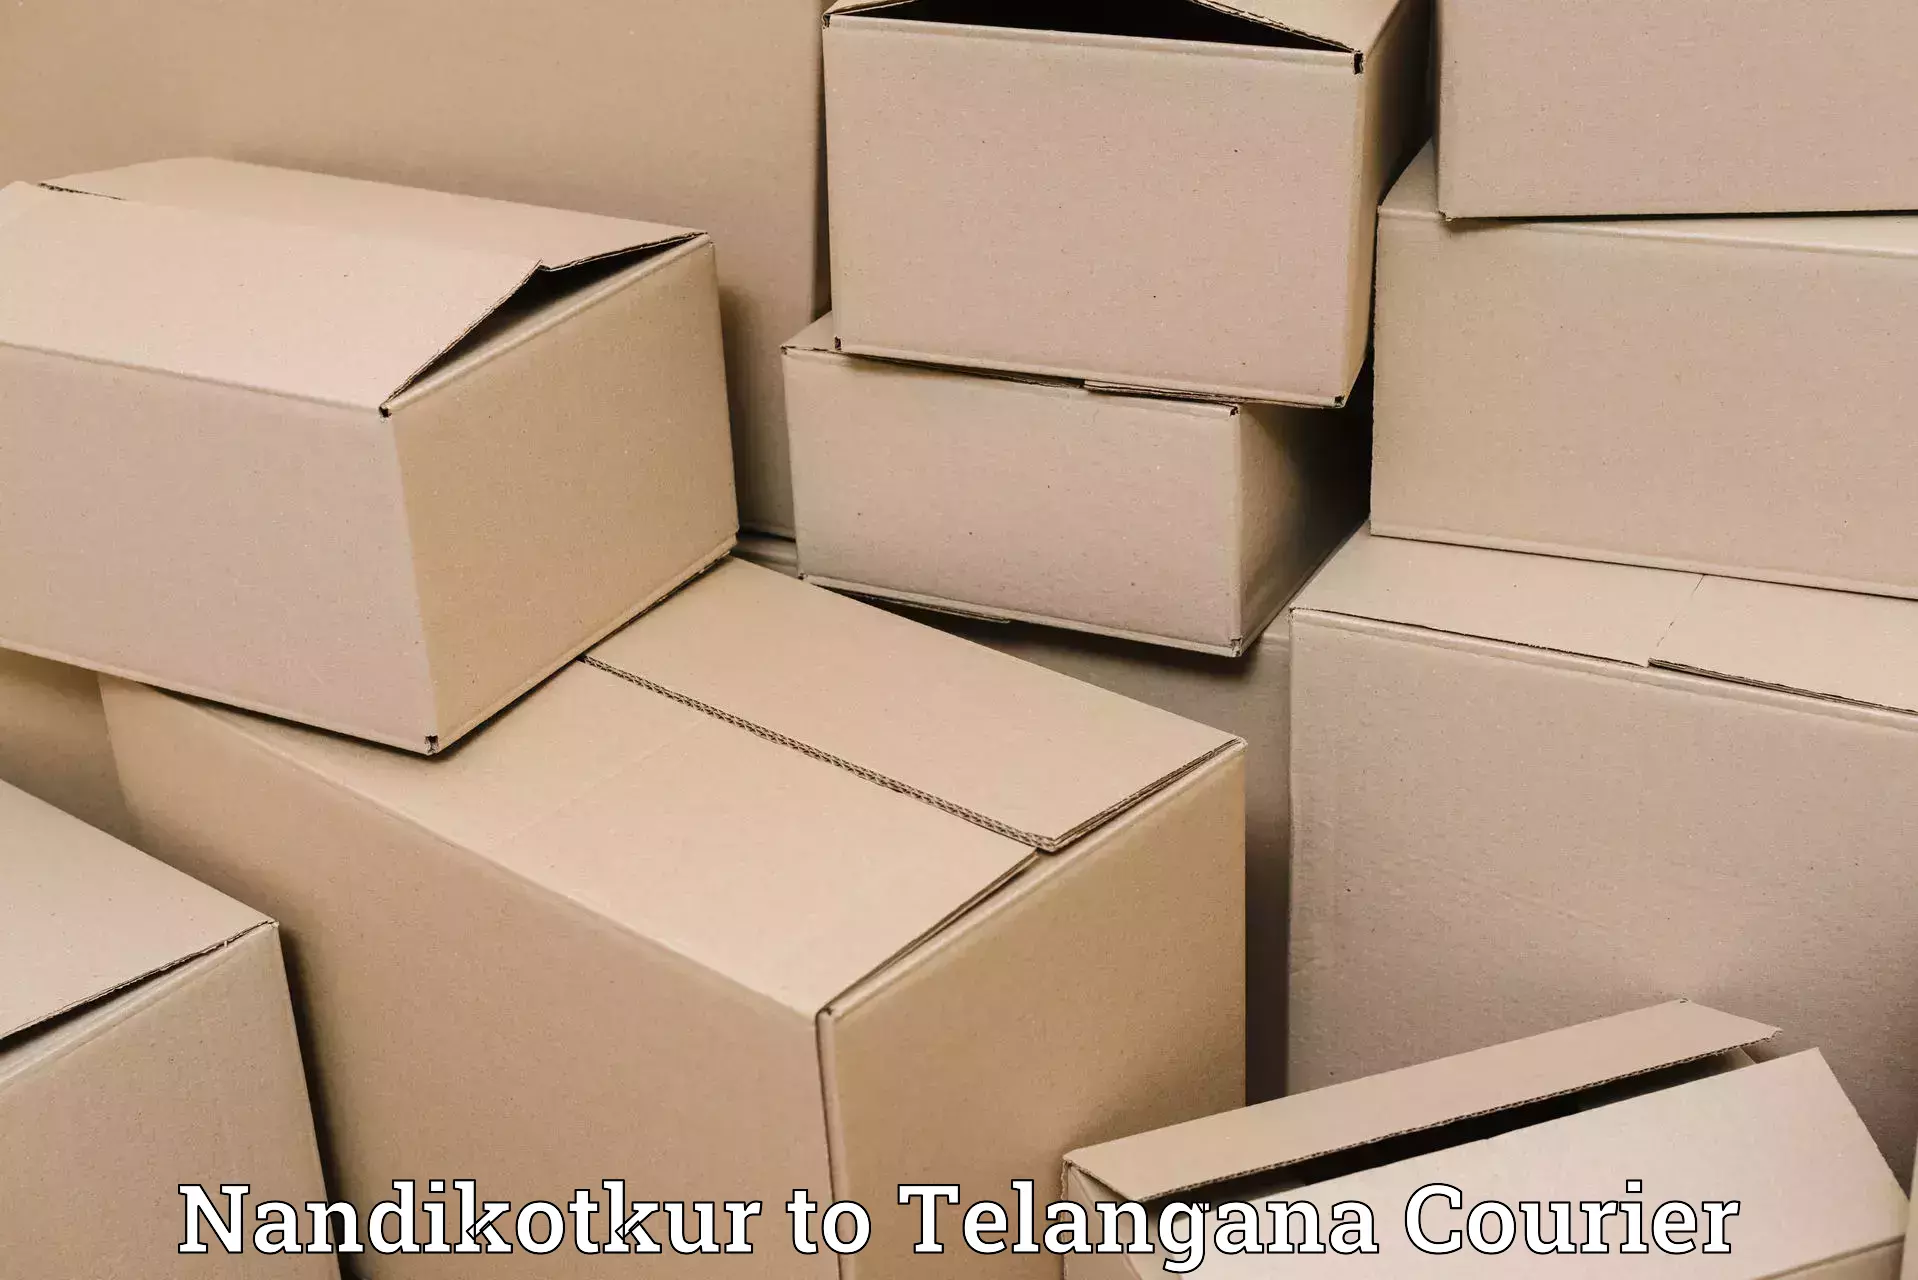 On-demand shipping options Nandikotkur to Telangana